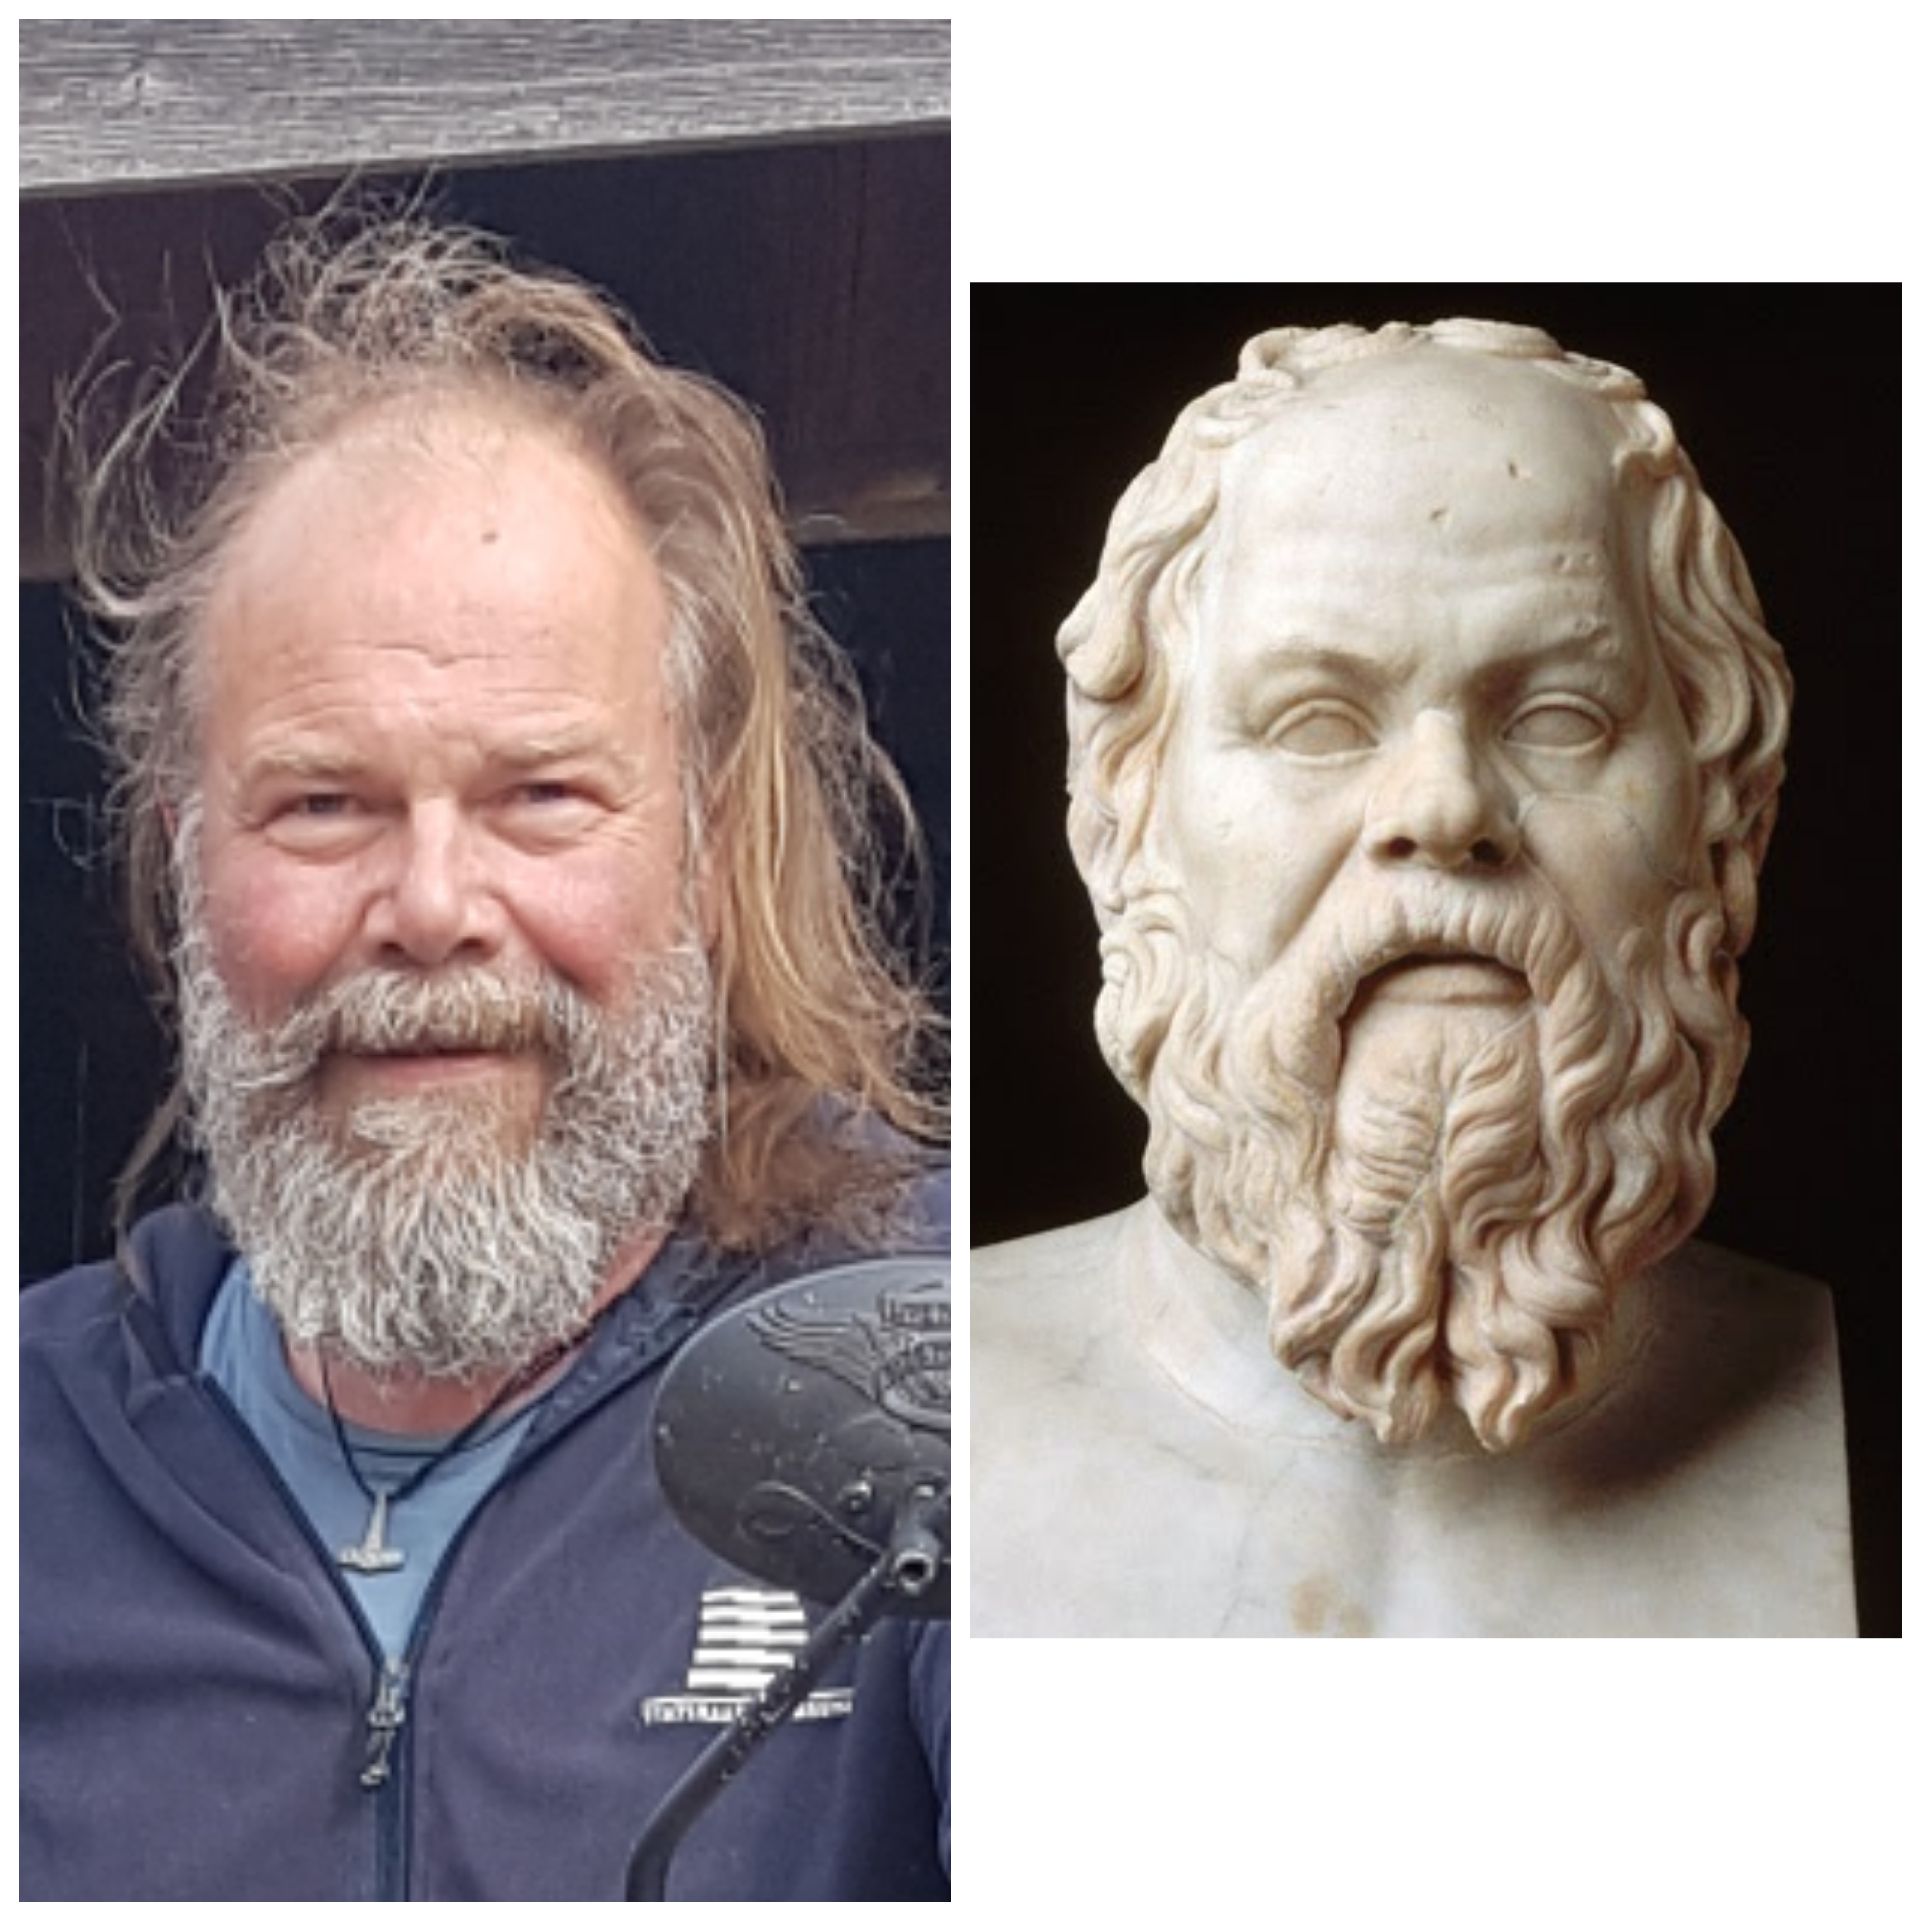 I just realised my dad looks like Sokrates